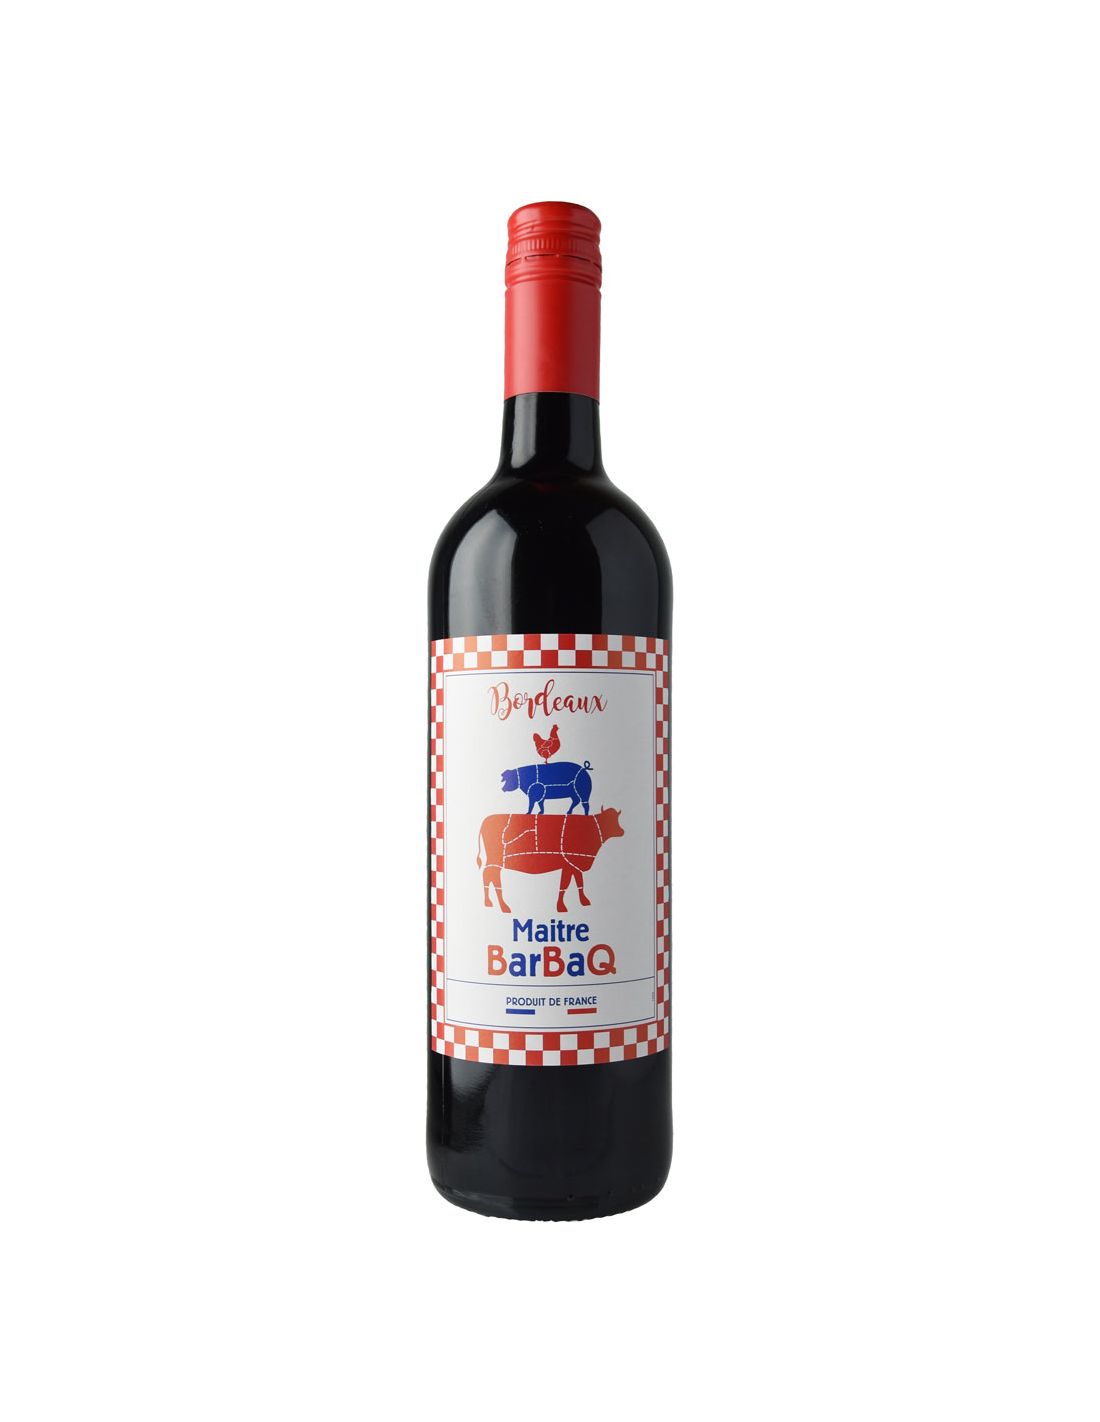 Bouteille de vin rouge personnalisée Cheval Quancard Réserve